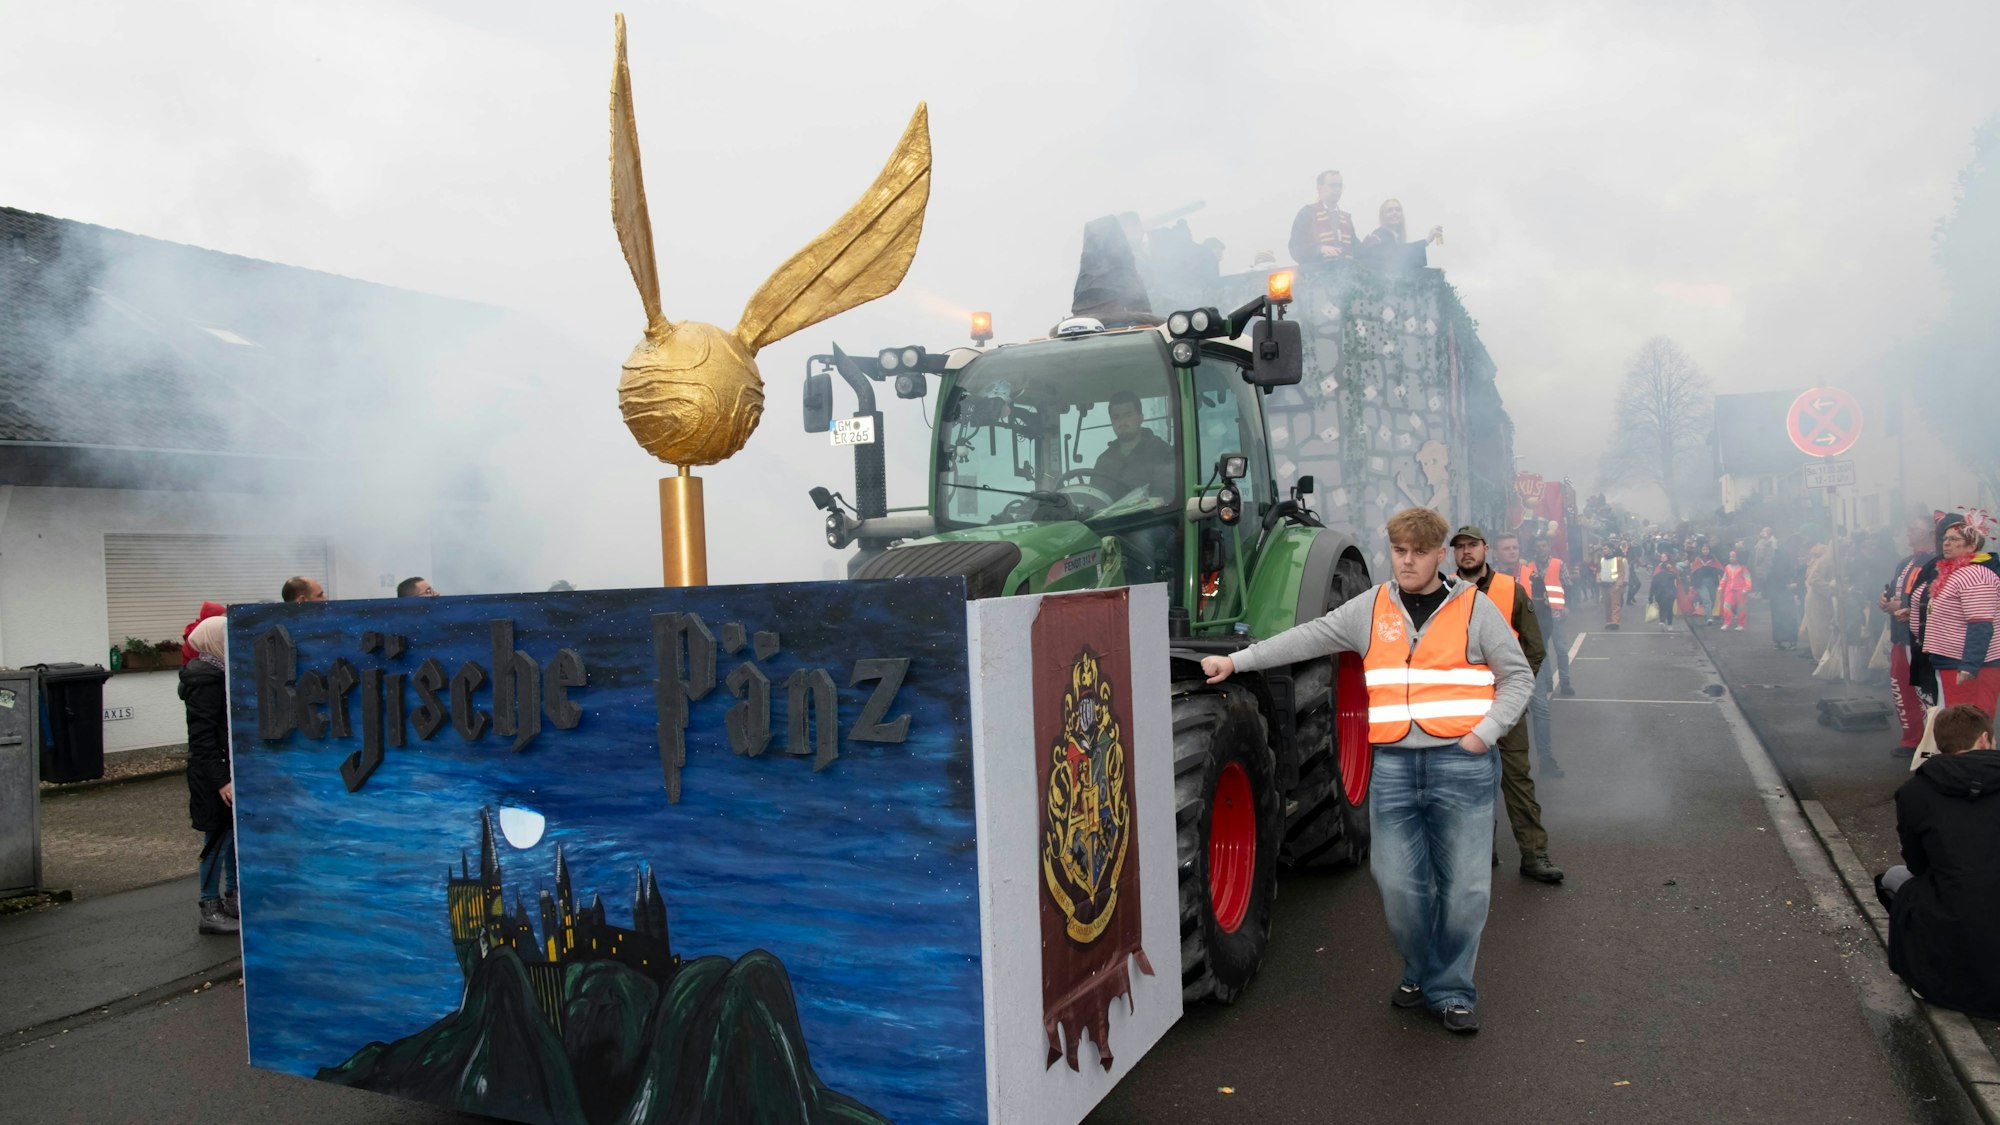 Ein Karnevals-Mottowagen zum Thema Hogwarts, mit einem goldenen Schnatz vorne auf dem Wagen.